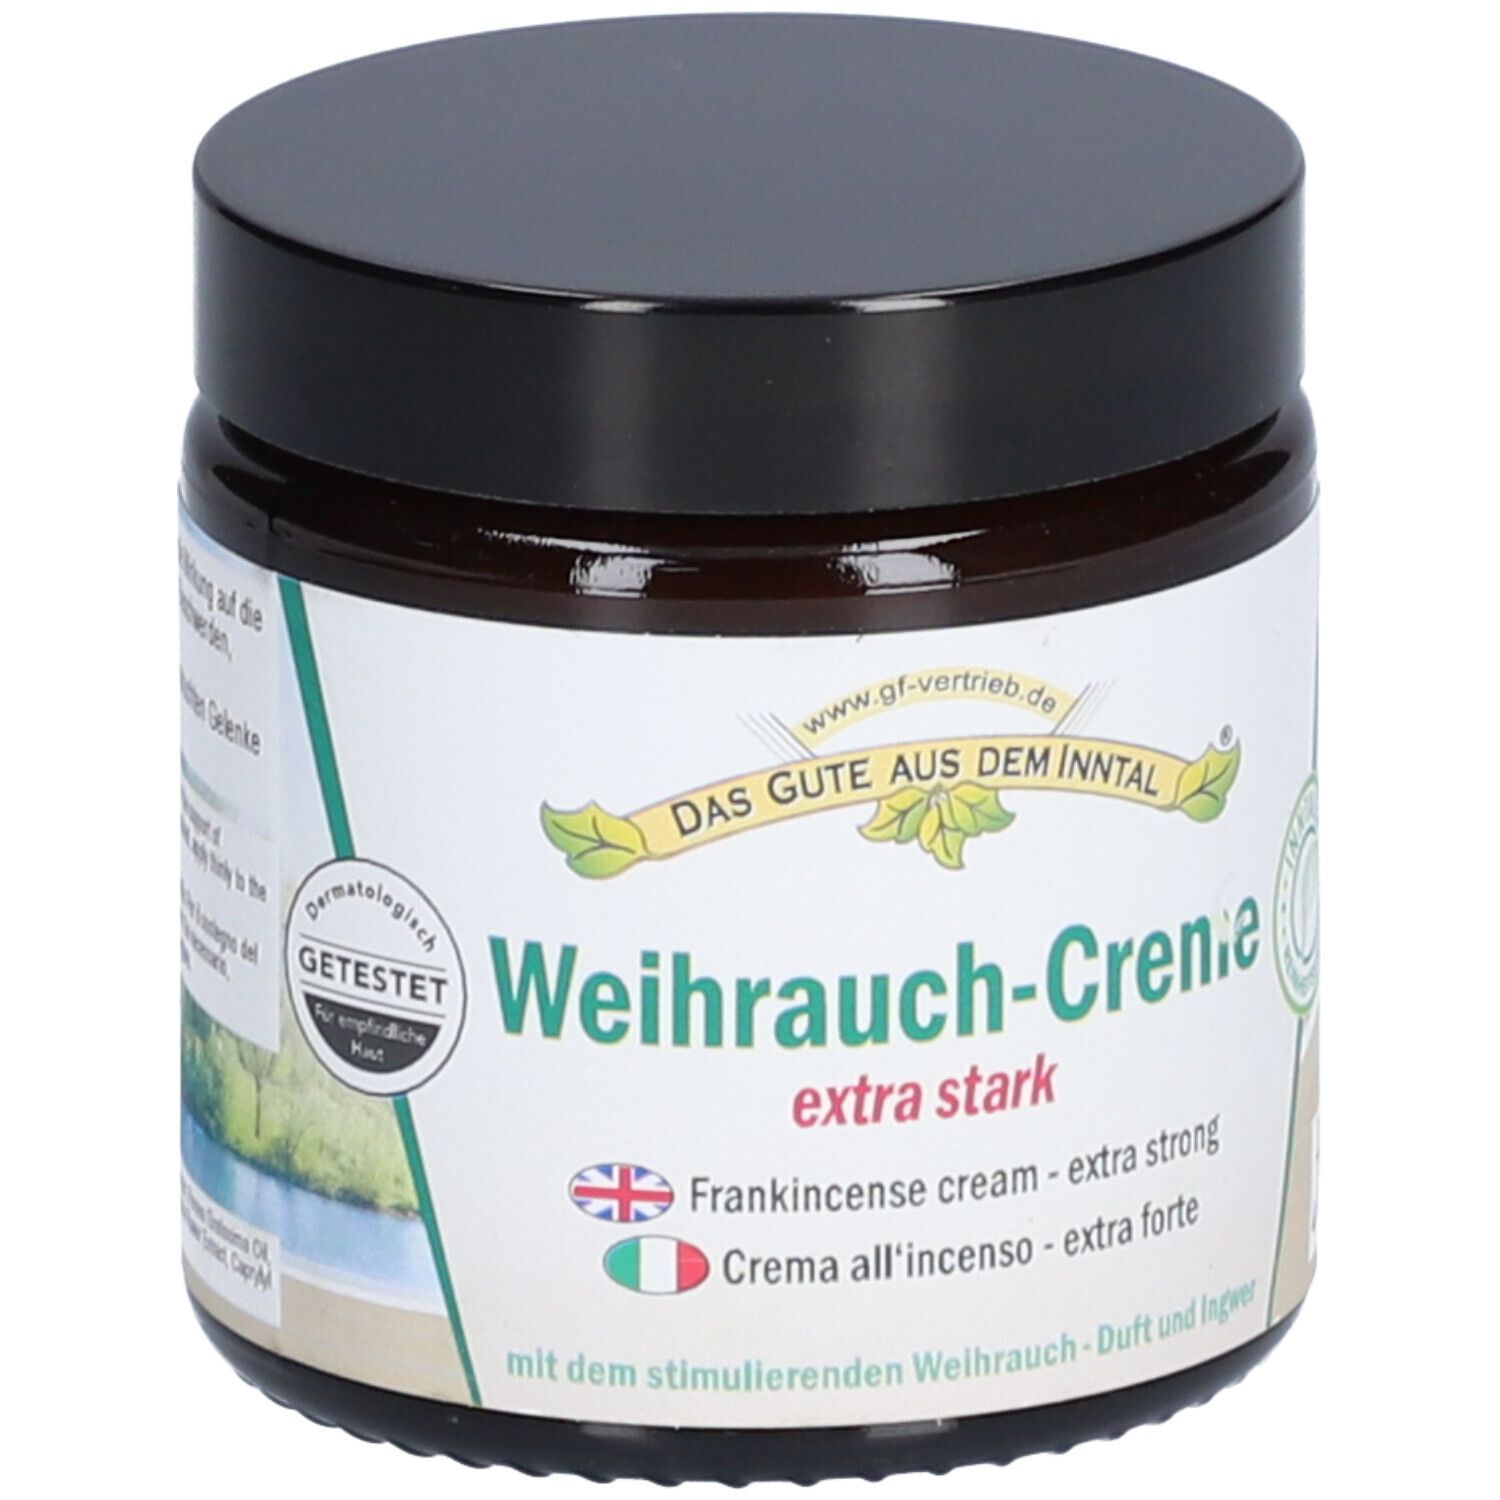 Weihrauch-Creme extra stark